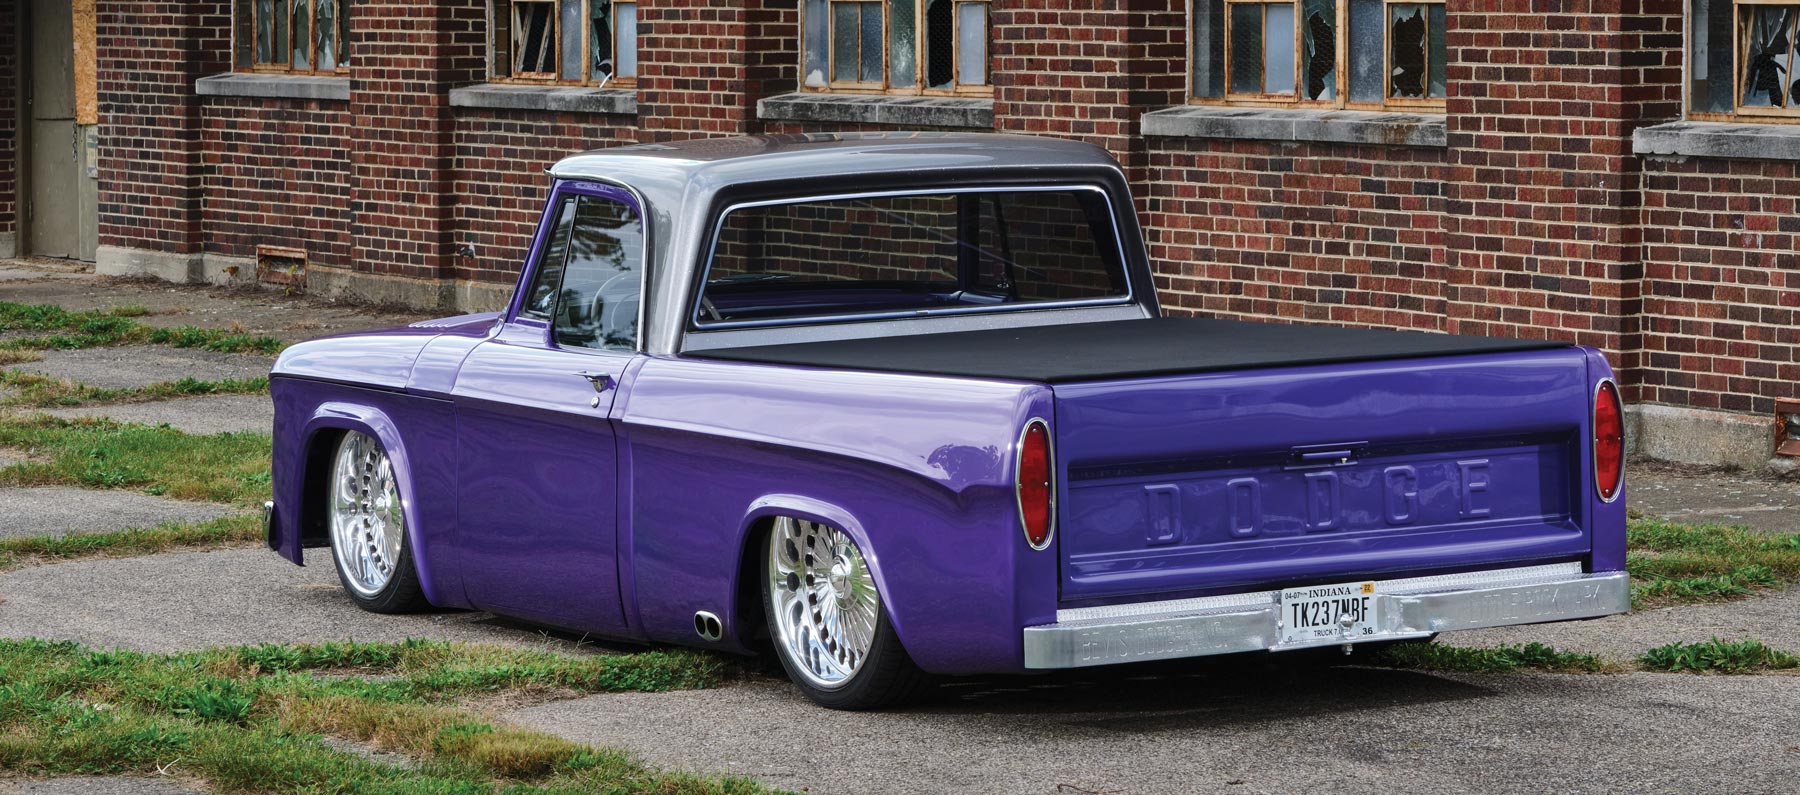 rear of purple truck